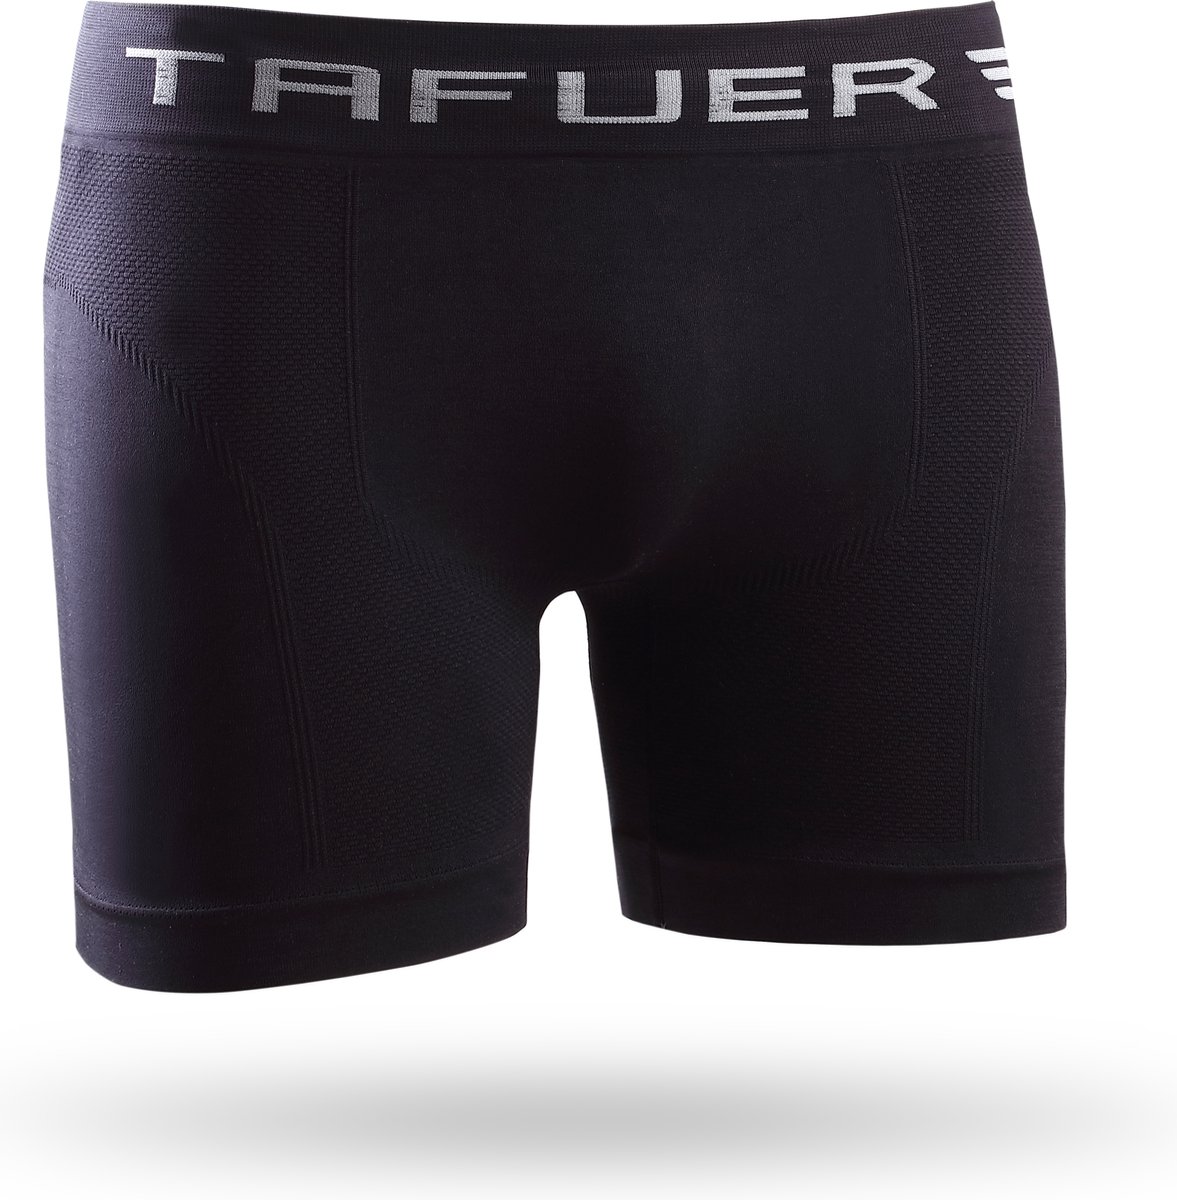 TAFUER - Naadloos Heren Ondergoed - Onderbroeken Heren - Zwart - Maat - L/XL - 1 Stuk